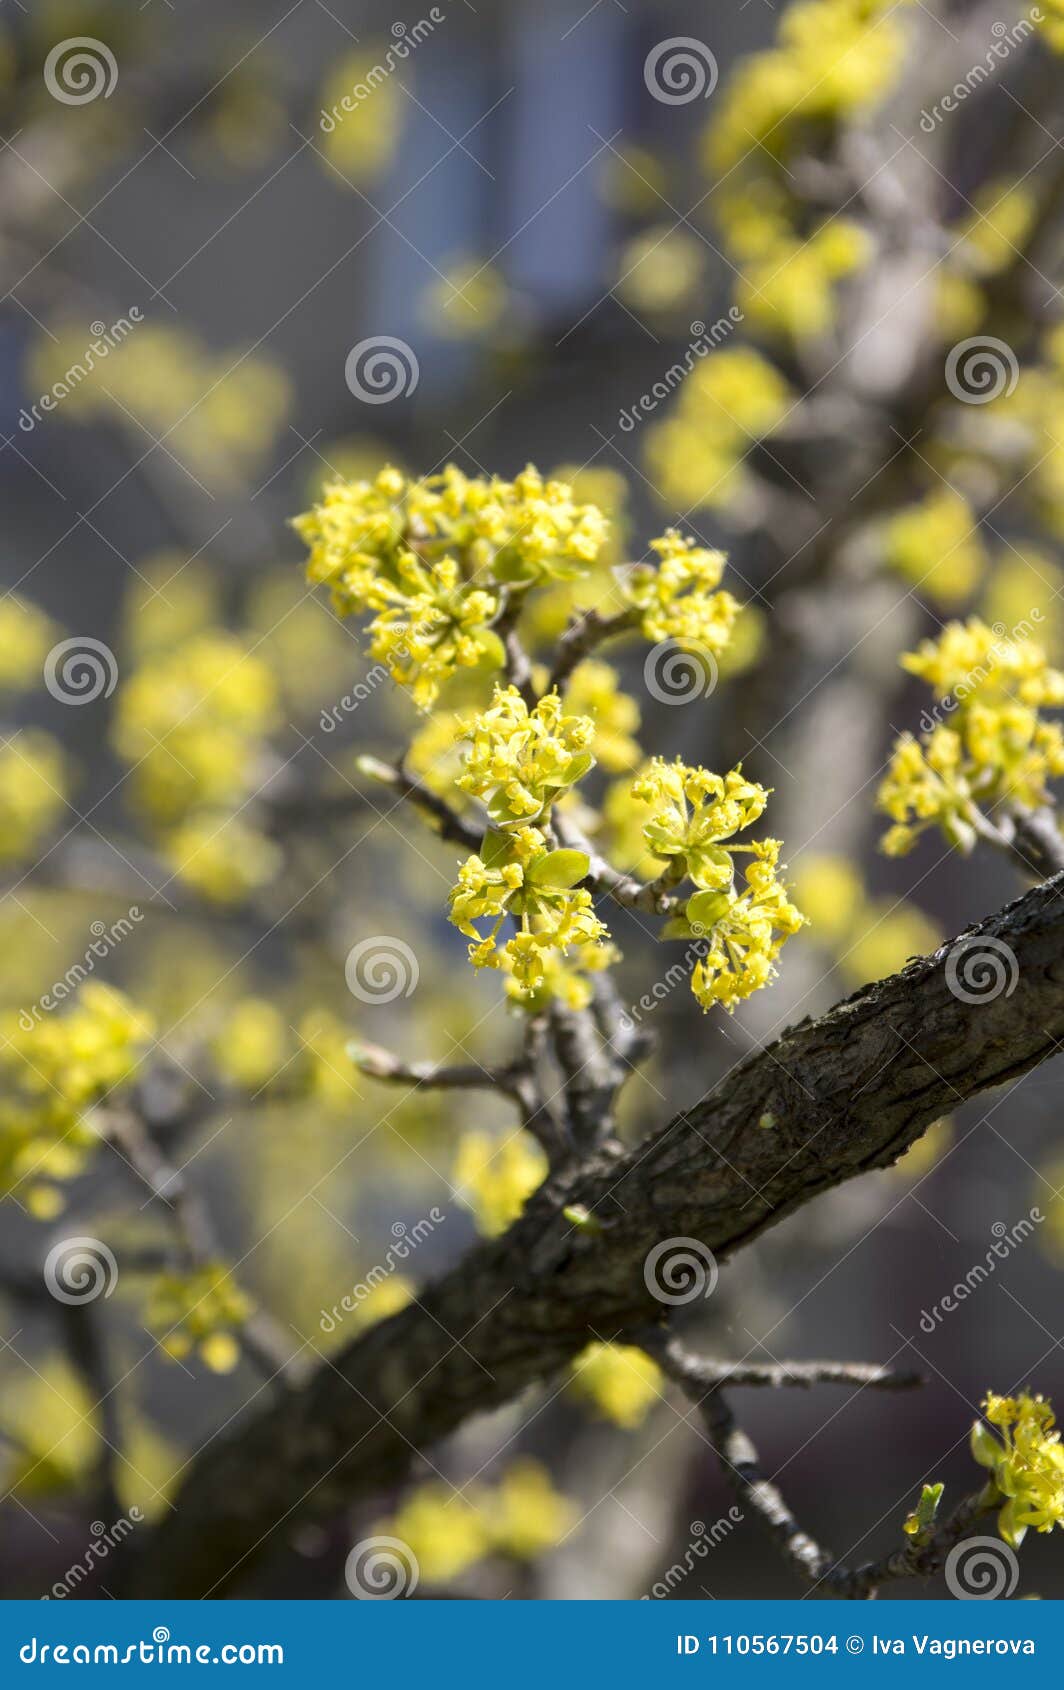 Obstbäume mit gelben Blüten